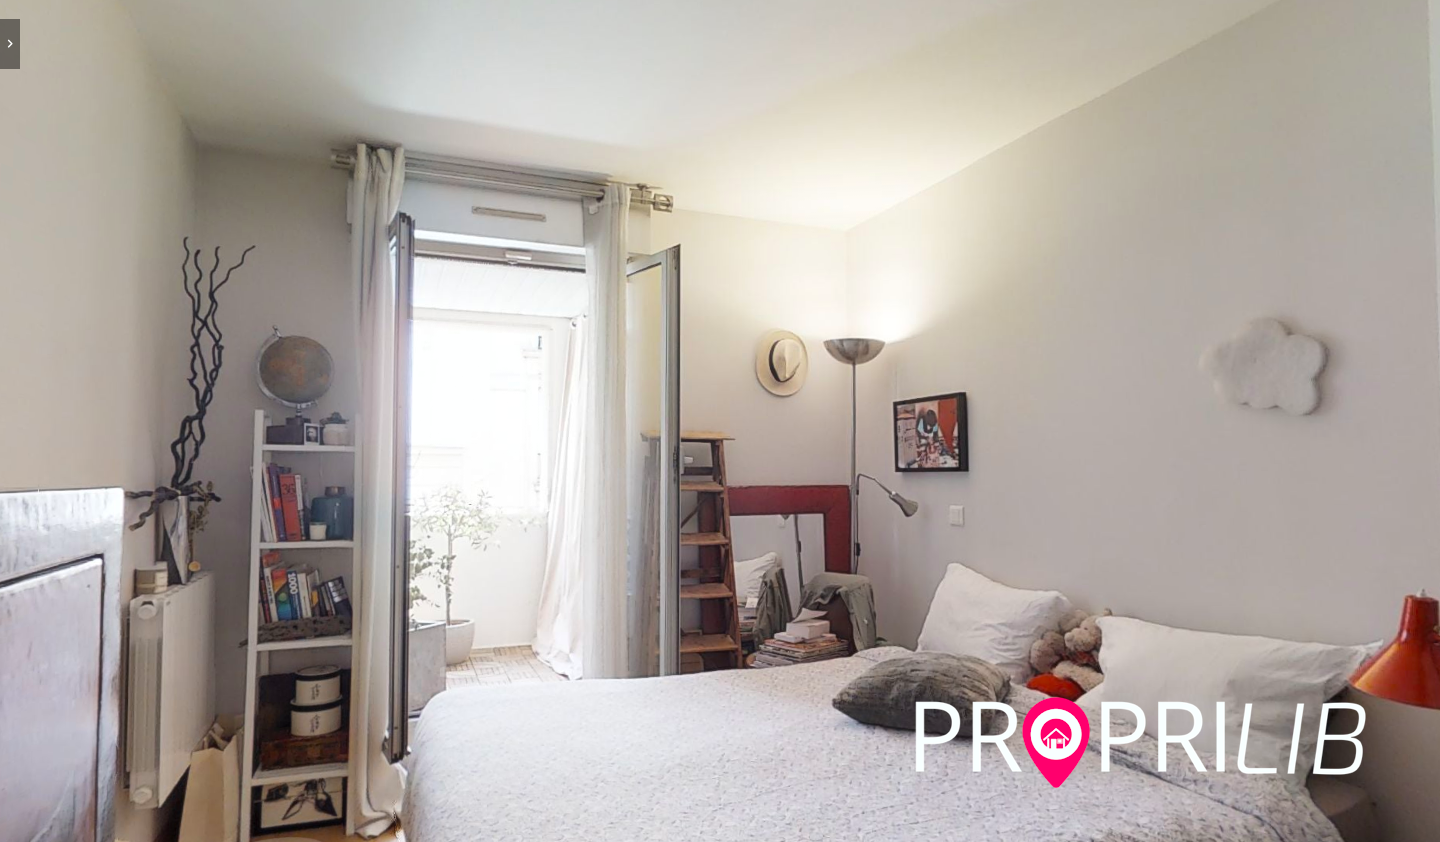 PropriLib l’agence immobilière en ligne à commission fixe vend cet appartement à Paris 11ème